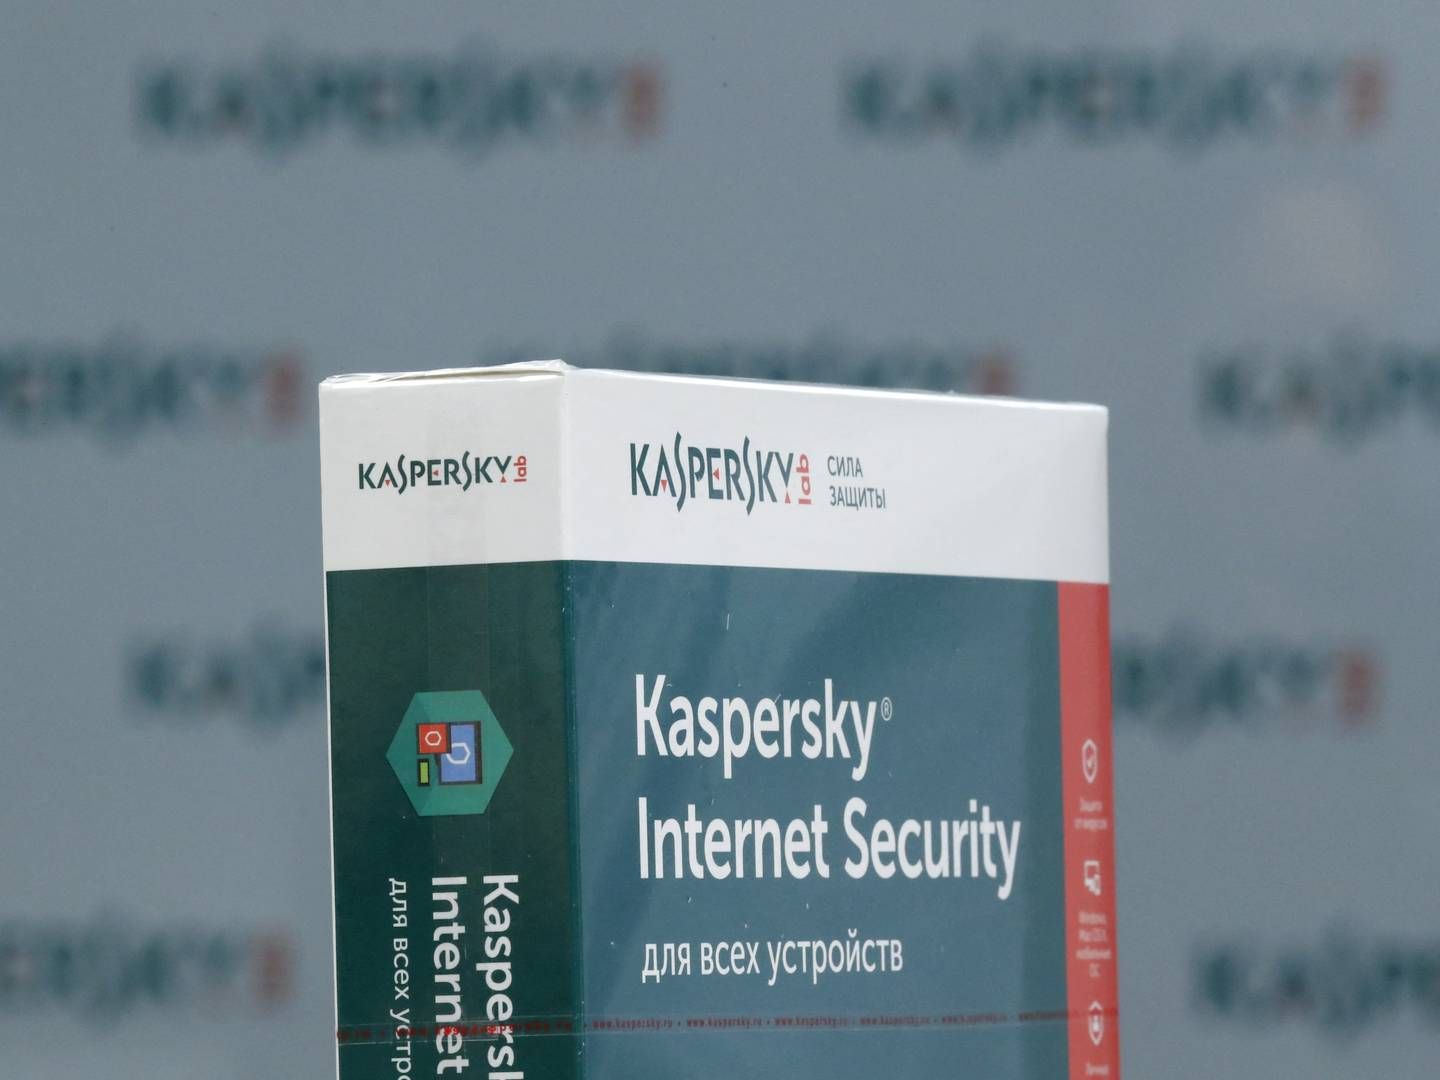 Forbuddet mod salg til nye kunder træder i kraft 20. juli. Kaspersky må levere softwareopdateringer til eksisterende amerikanske kunder indtil 29. september. | Foto: Maxim Shemetov